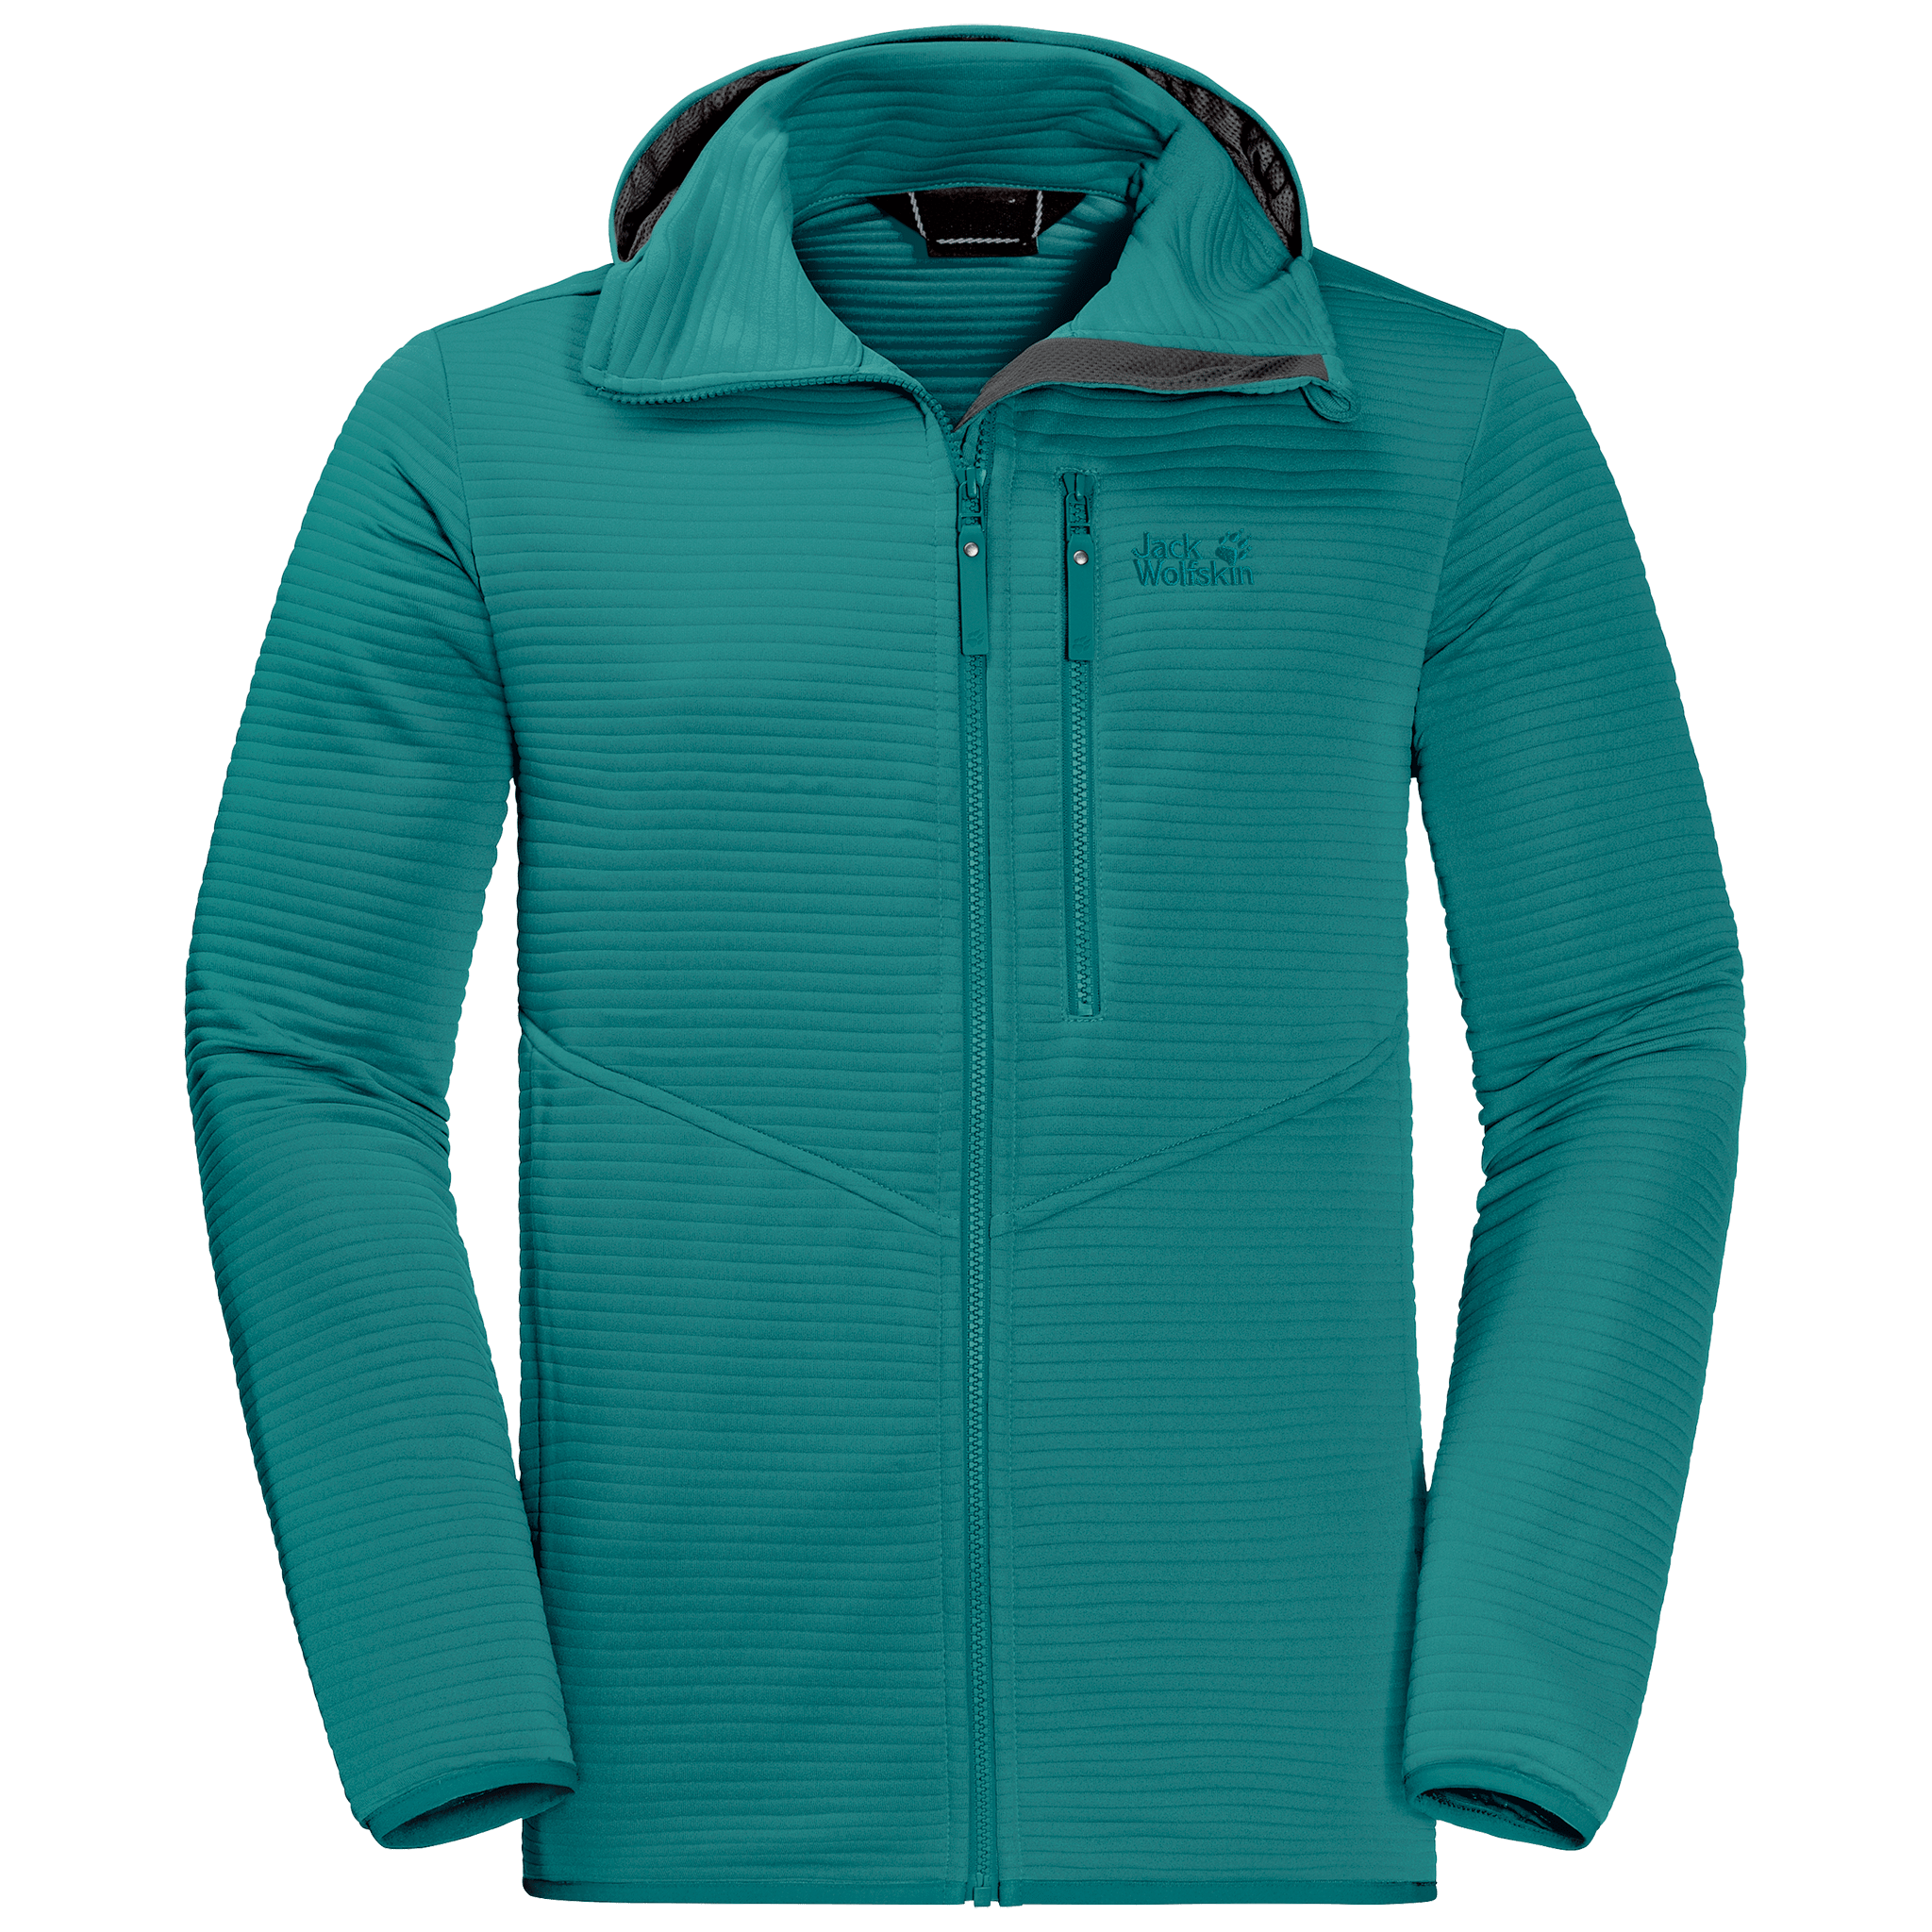 Emerald Green Lightweight Travel Fleece Jacket